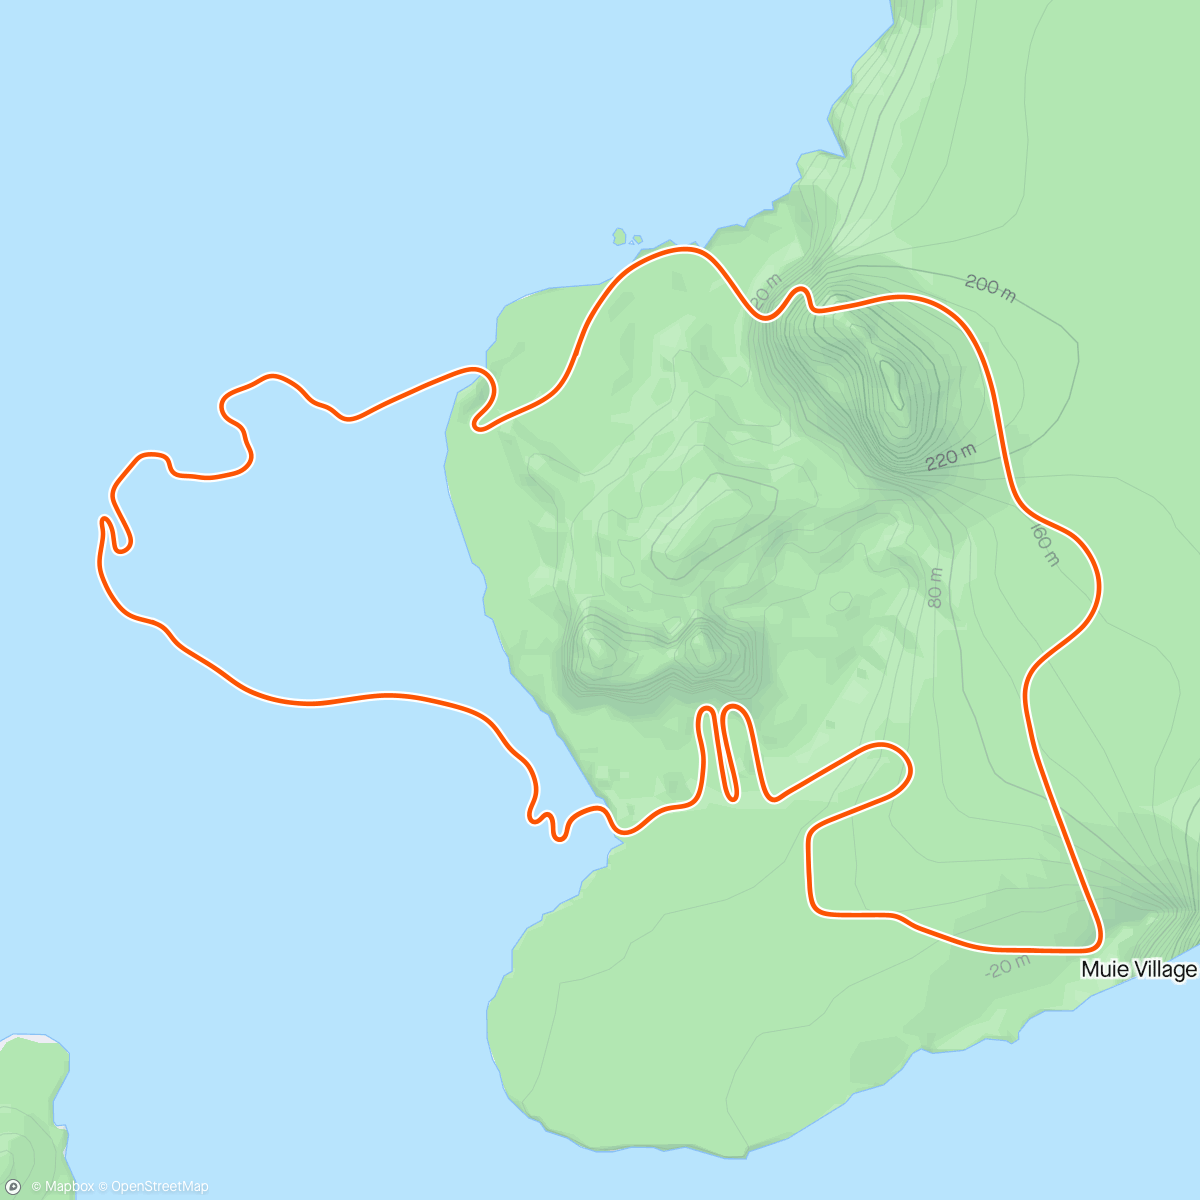 アクティビティ「Zwift - Volcano Flat in Watopia」の地図